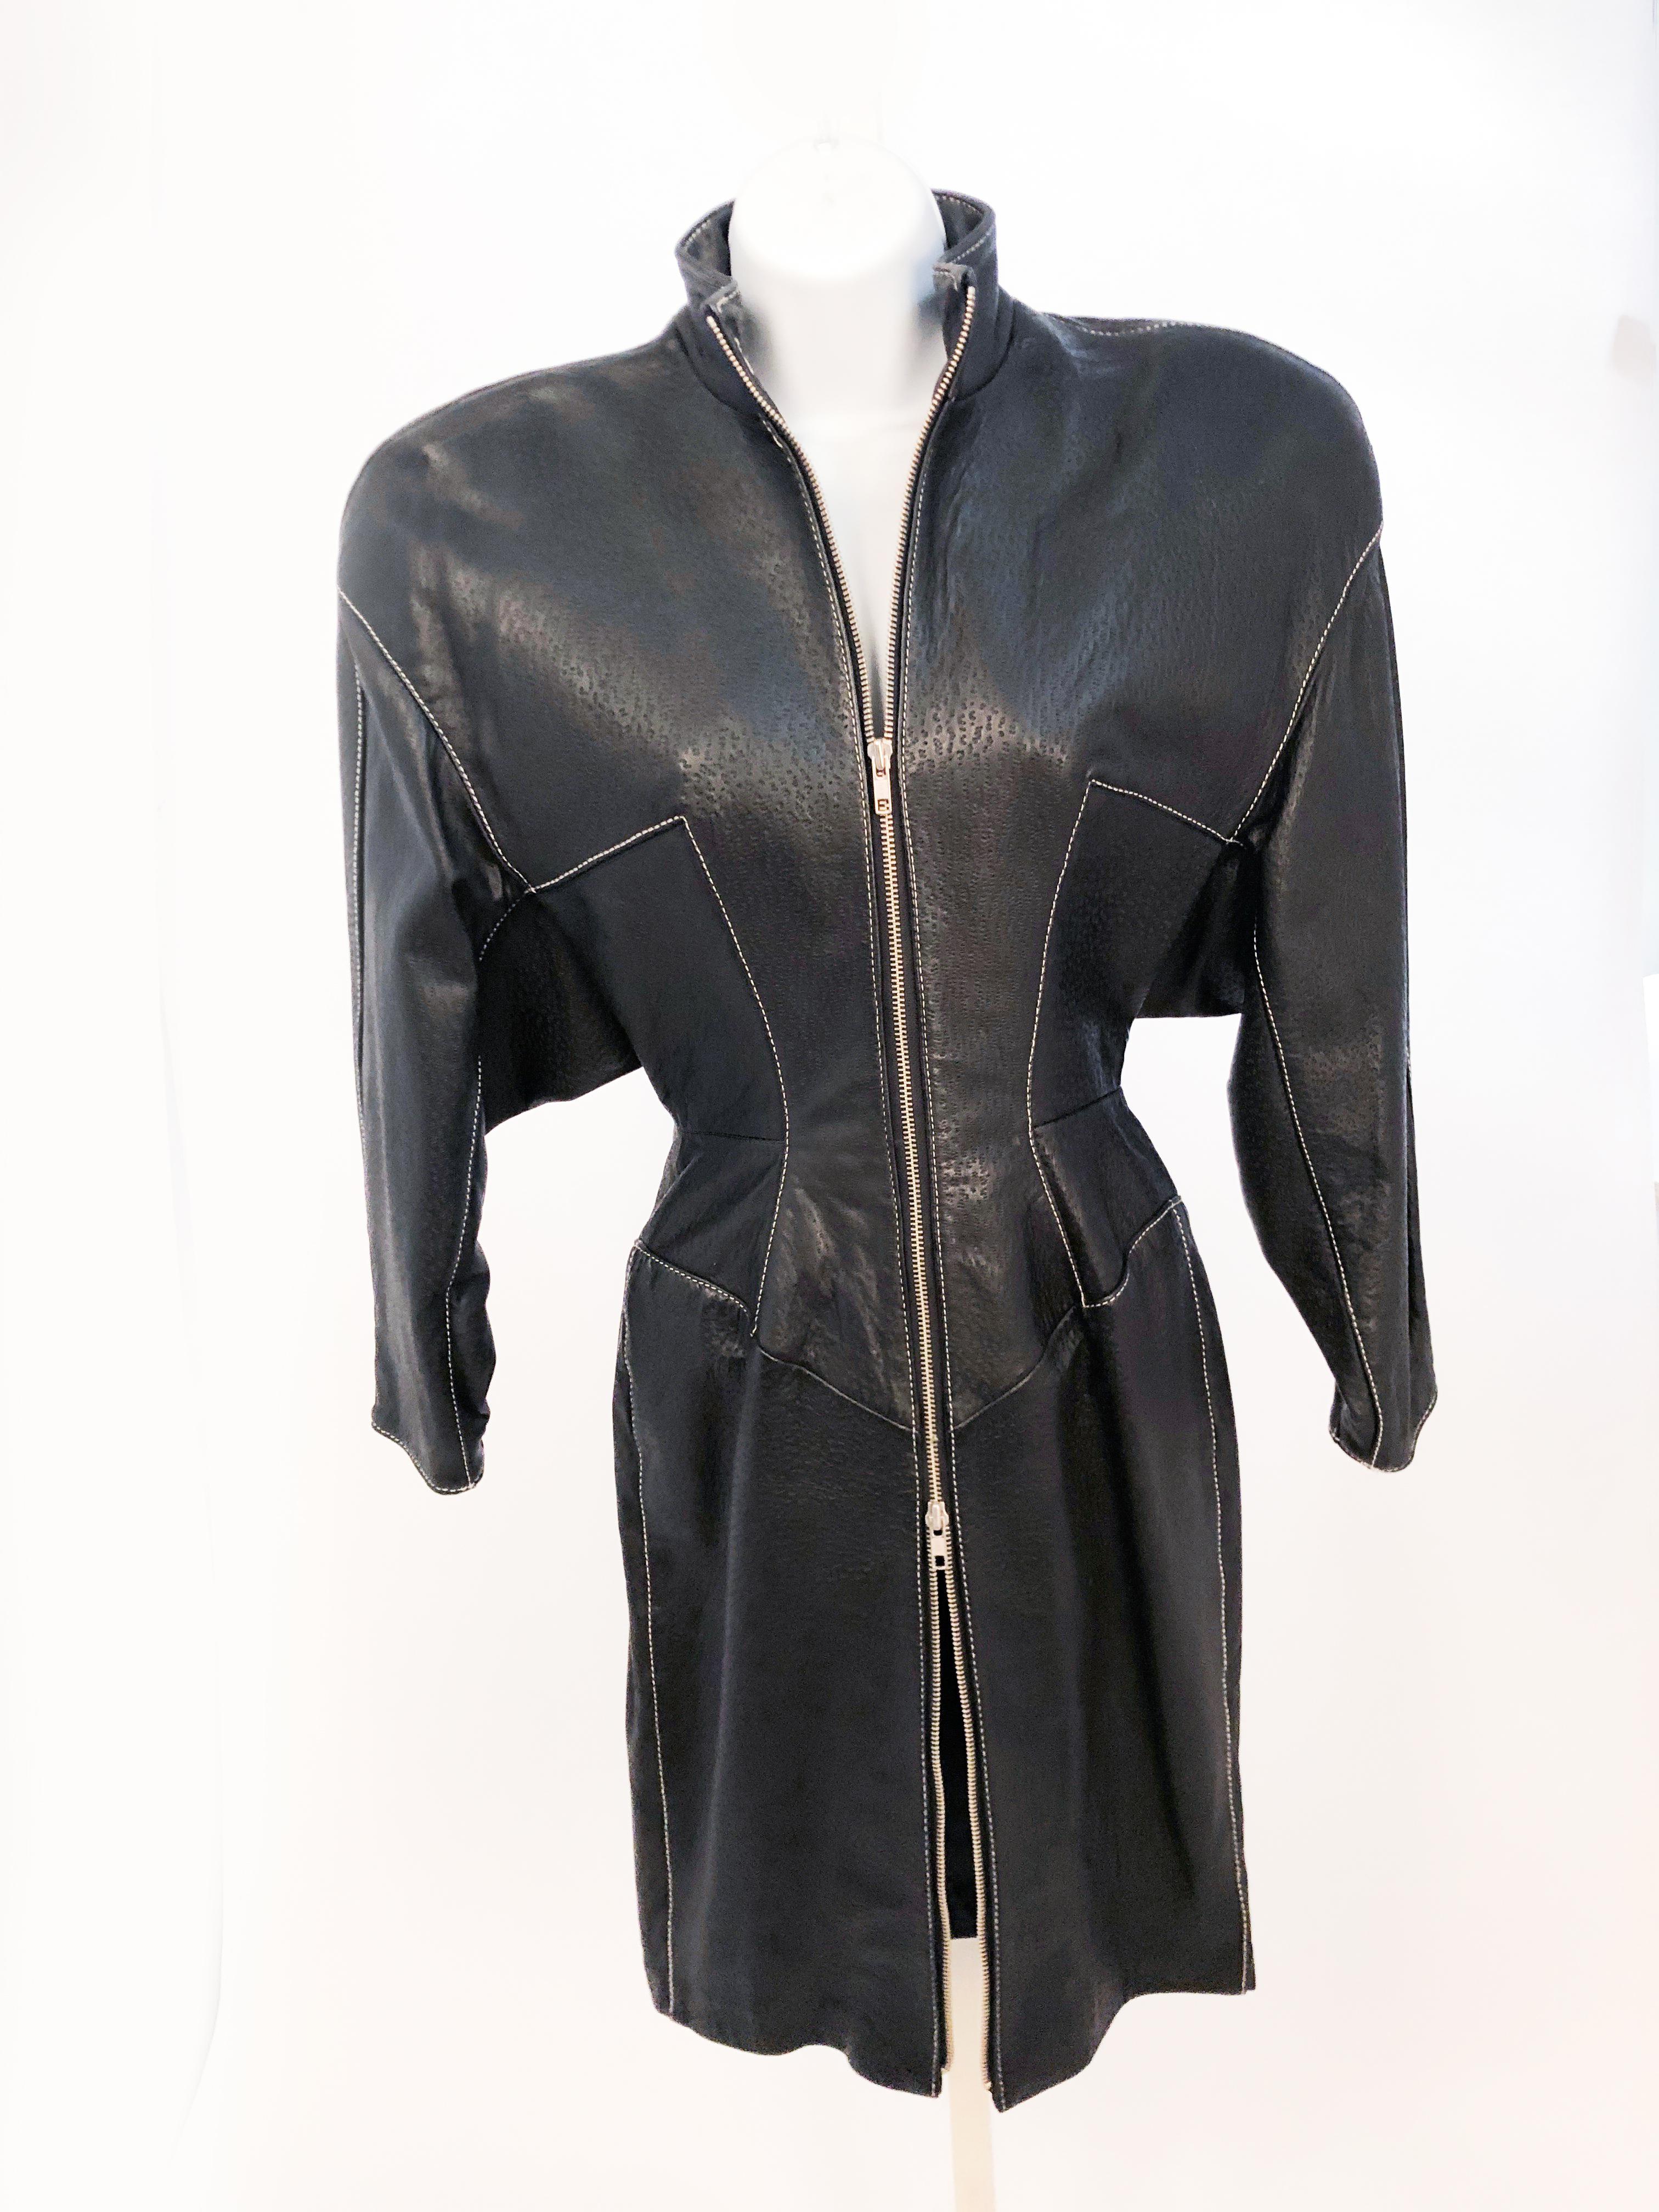 1980er North Beach Kleid aus schwarzem geprägtem Lammleder mit Schulterpolstern, Kontrastnähten und einem Metallreißverschluss auf der gesamten Vorderseite des Kleides.